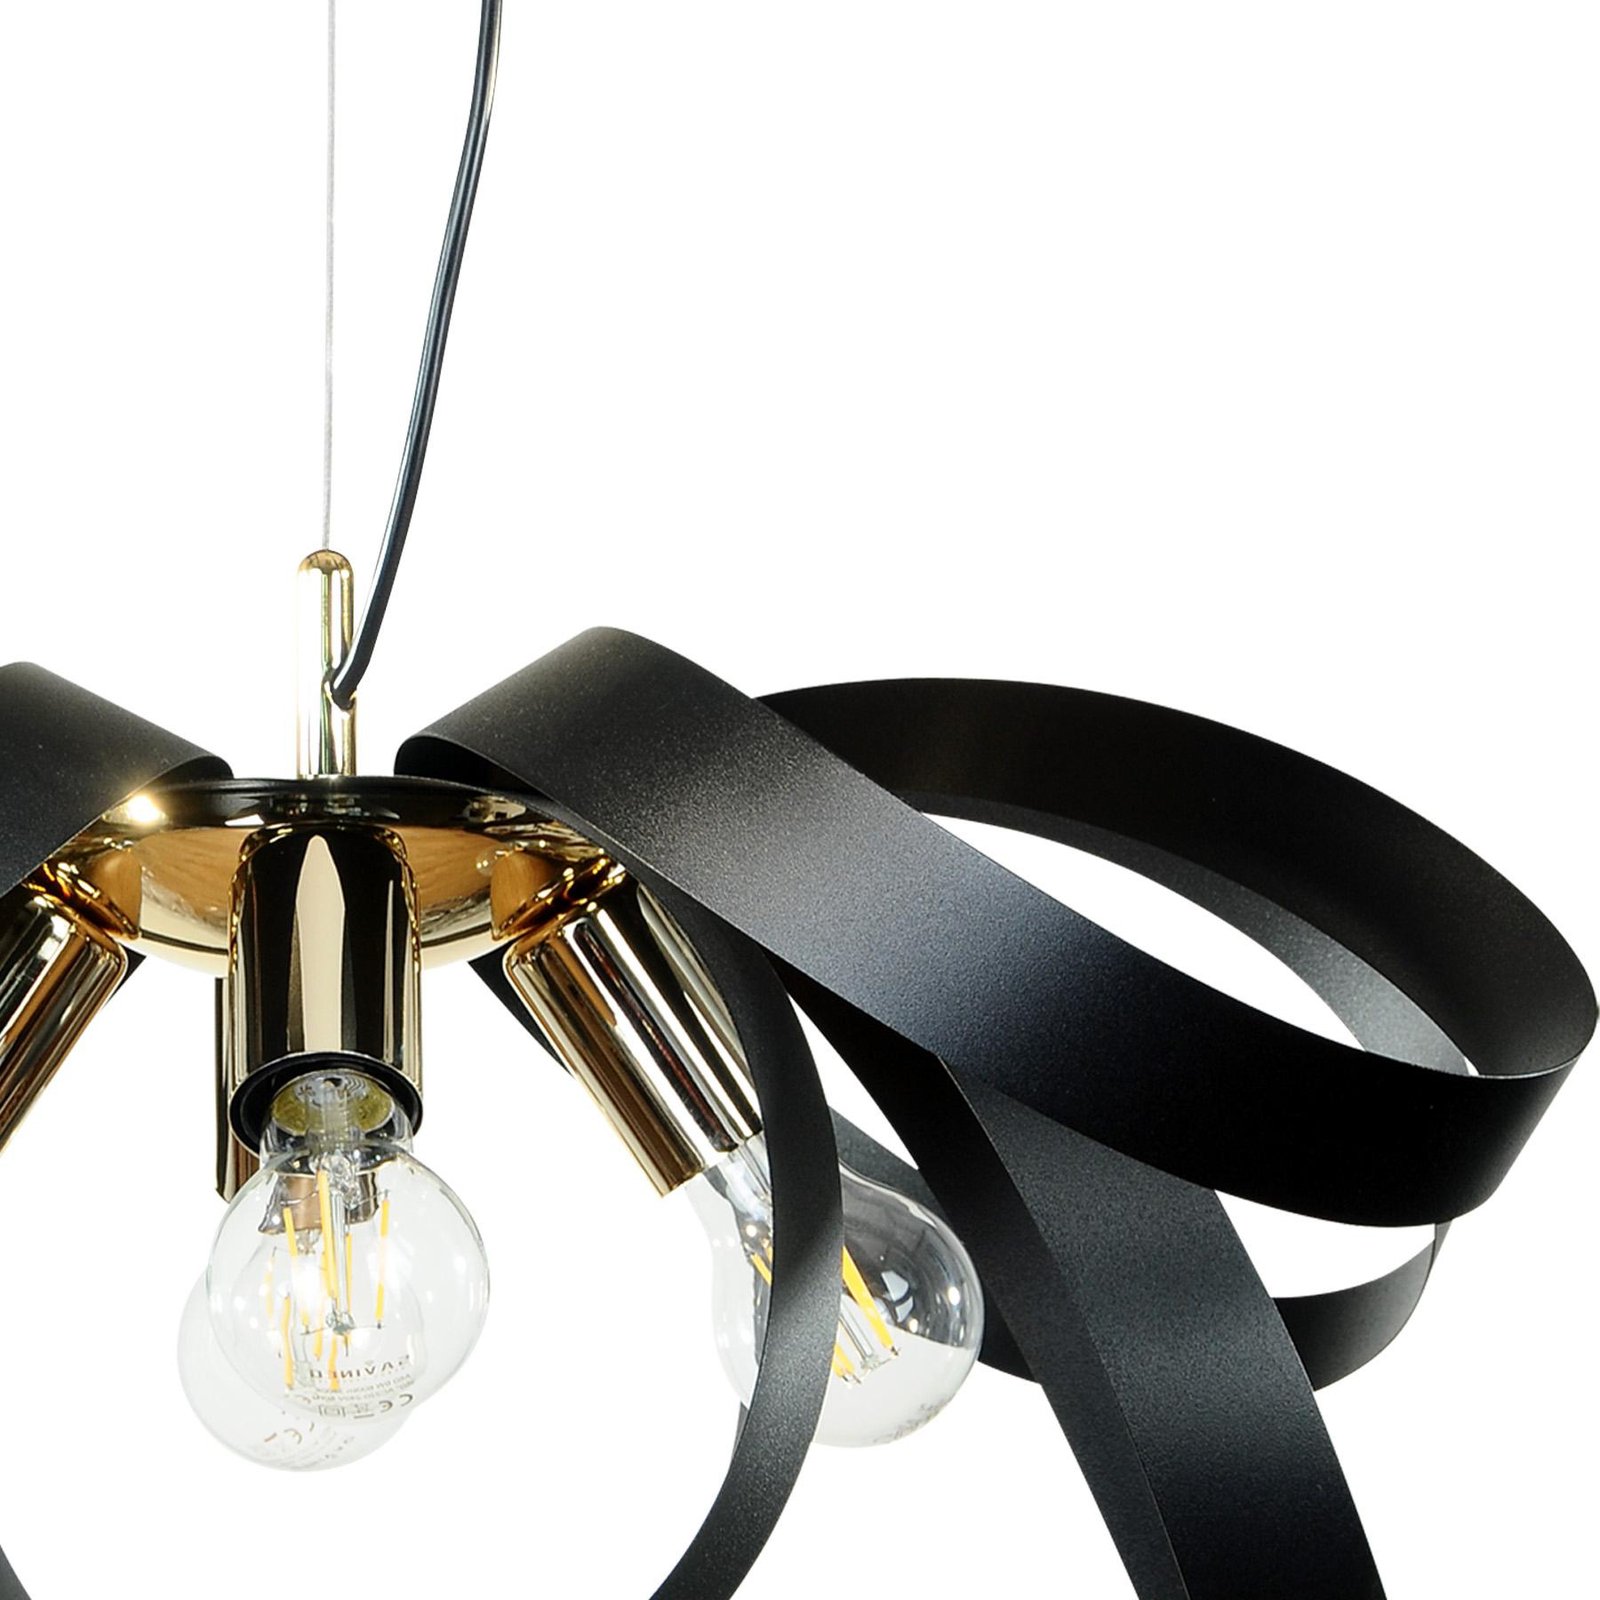 Euluna hanglamp Petla, zwart/goud, metaal, Ø 65 cm